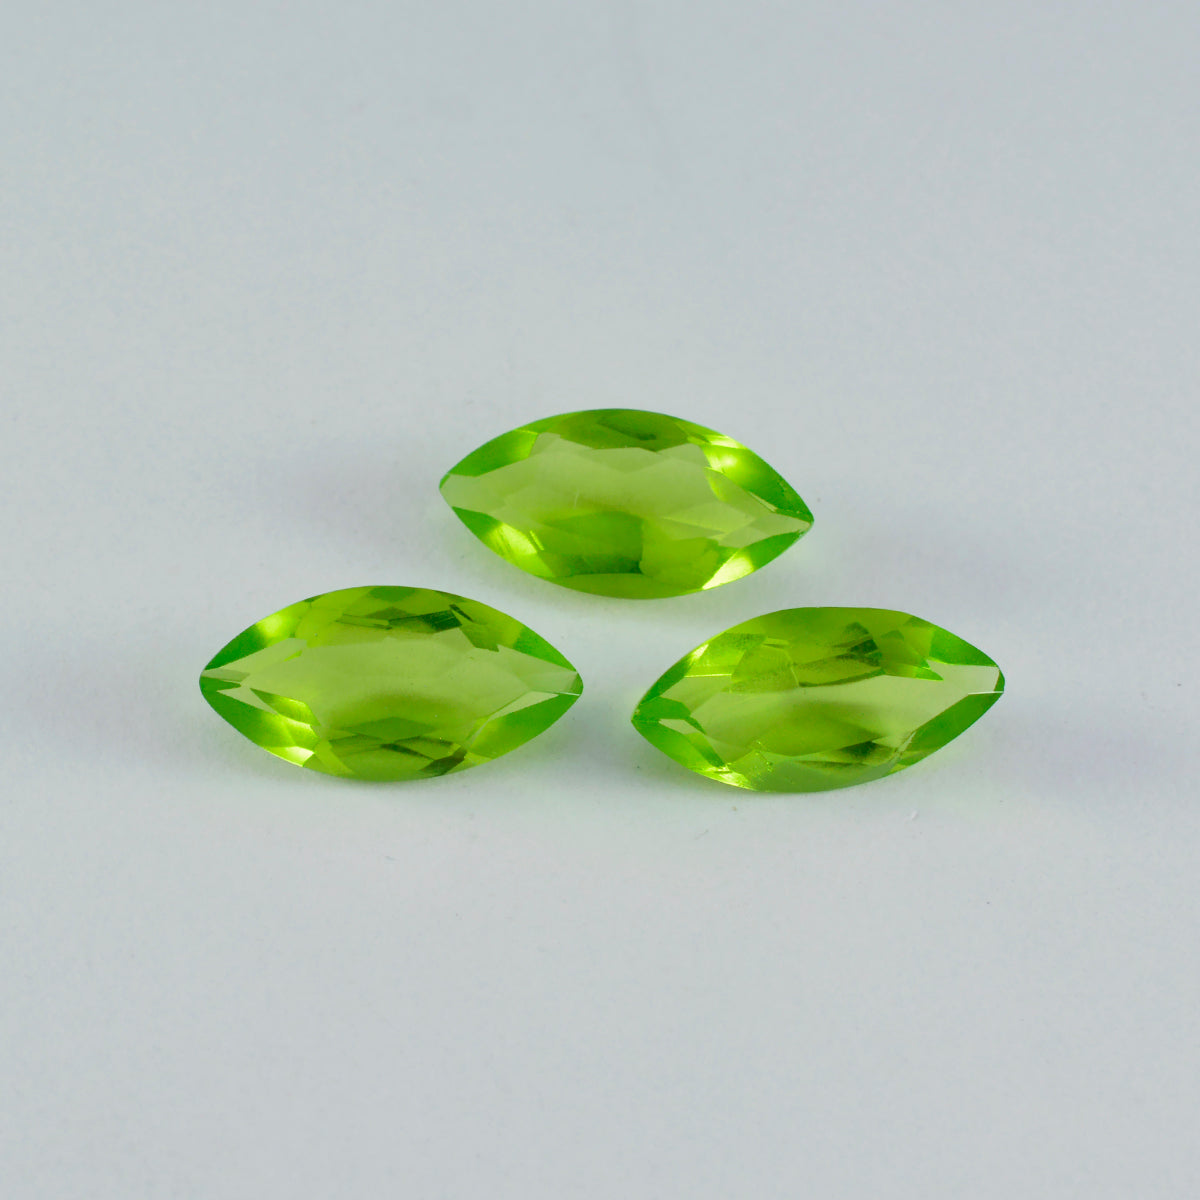 riyogems 1шт зеленый перидот cz граненый 9x18 мм форма маркиза хорошее качество драгоценные камни